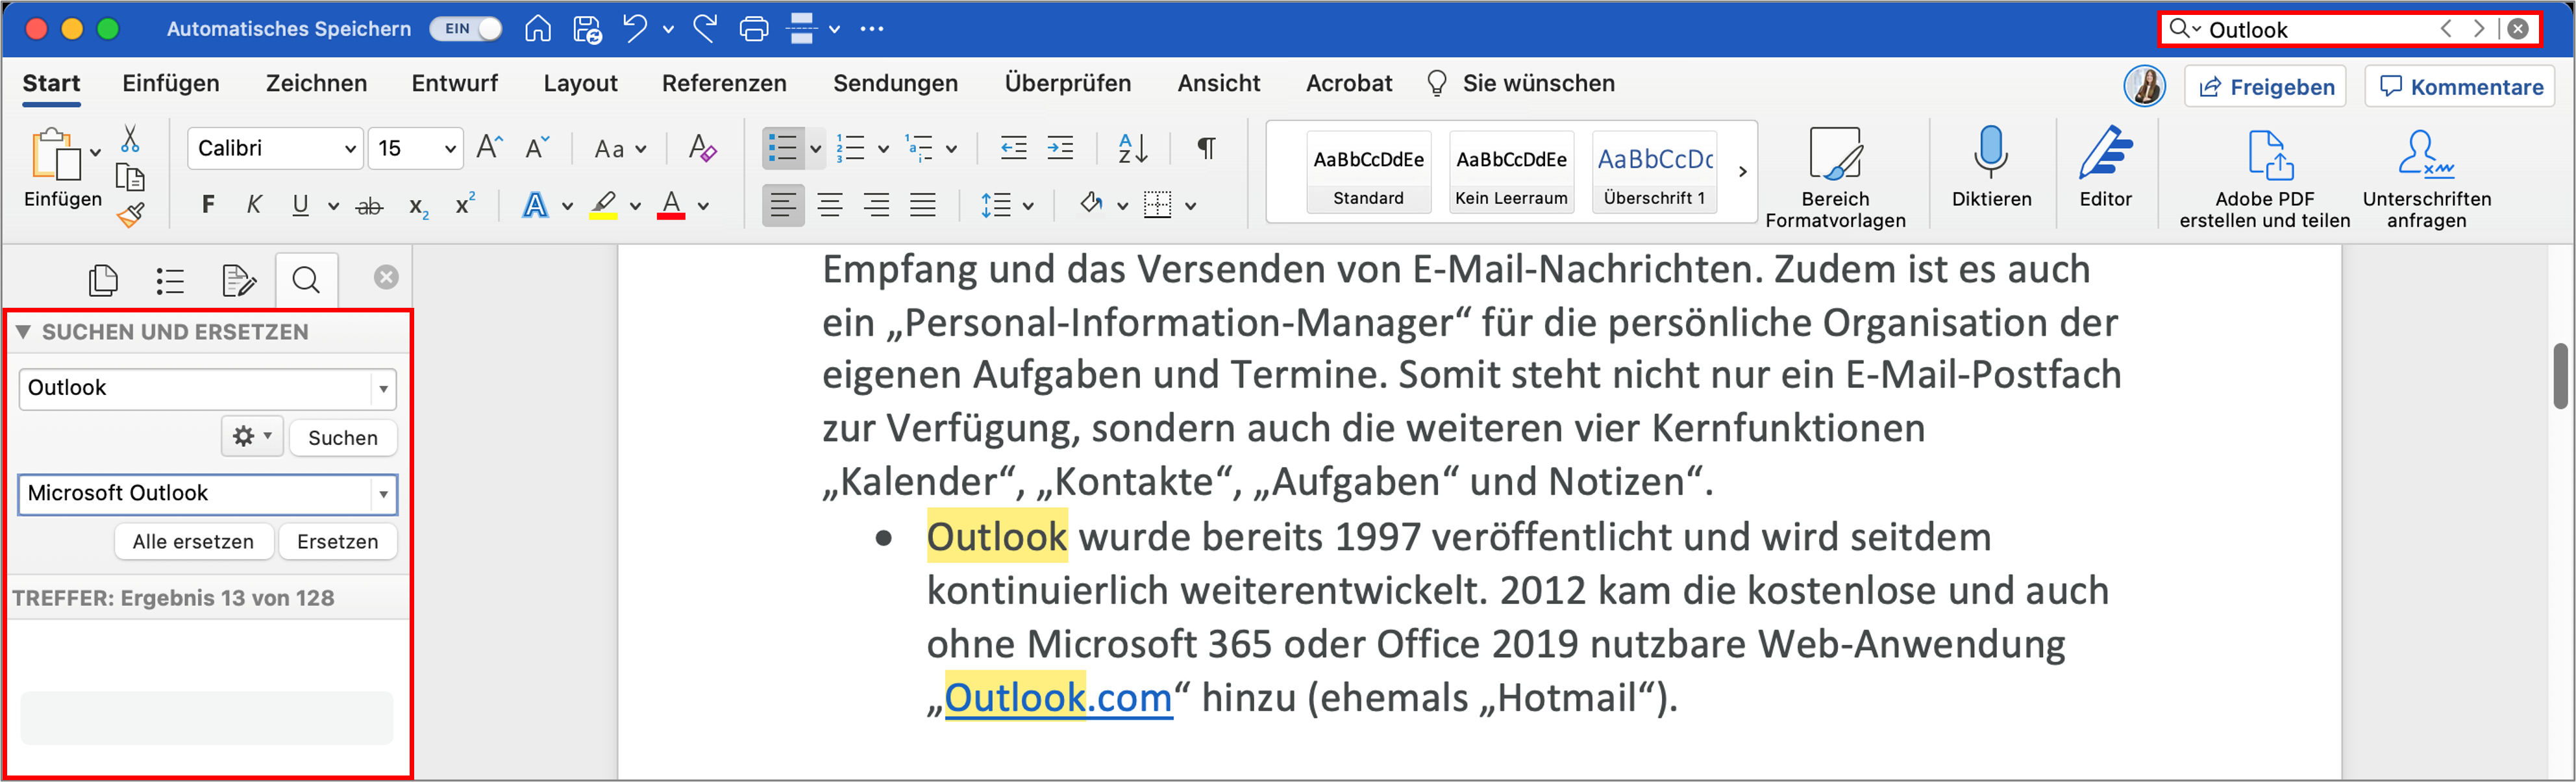 Wenn Sie Word auf dem MacBook nutzen, können Sie mit der Suchfunktion Wörter innerhalb des Dokuments suchen und ggf. alle ersetzten.